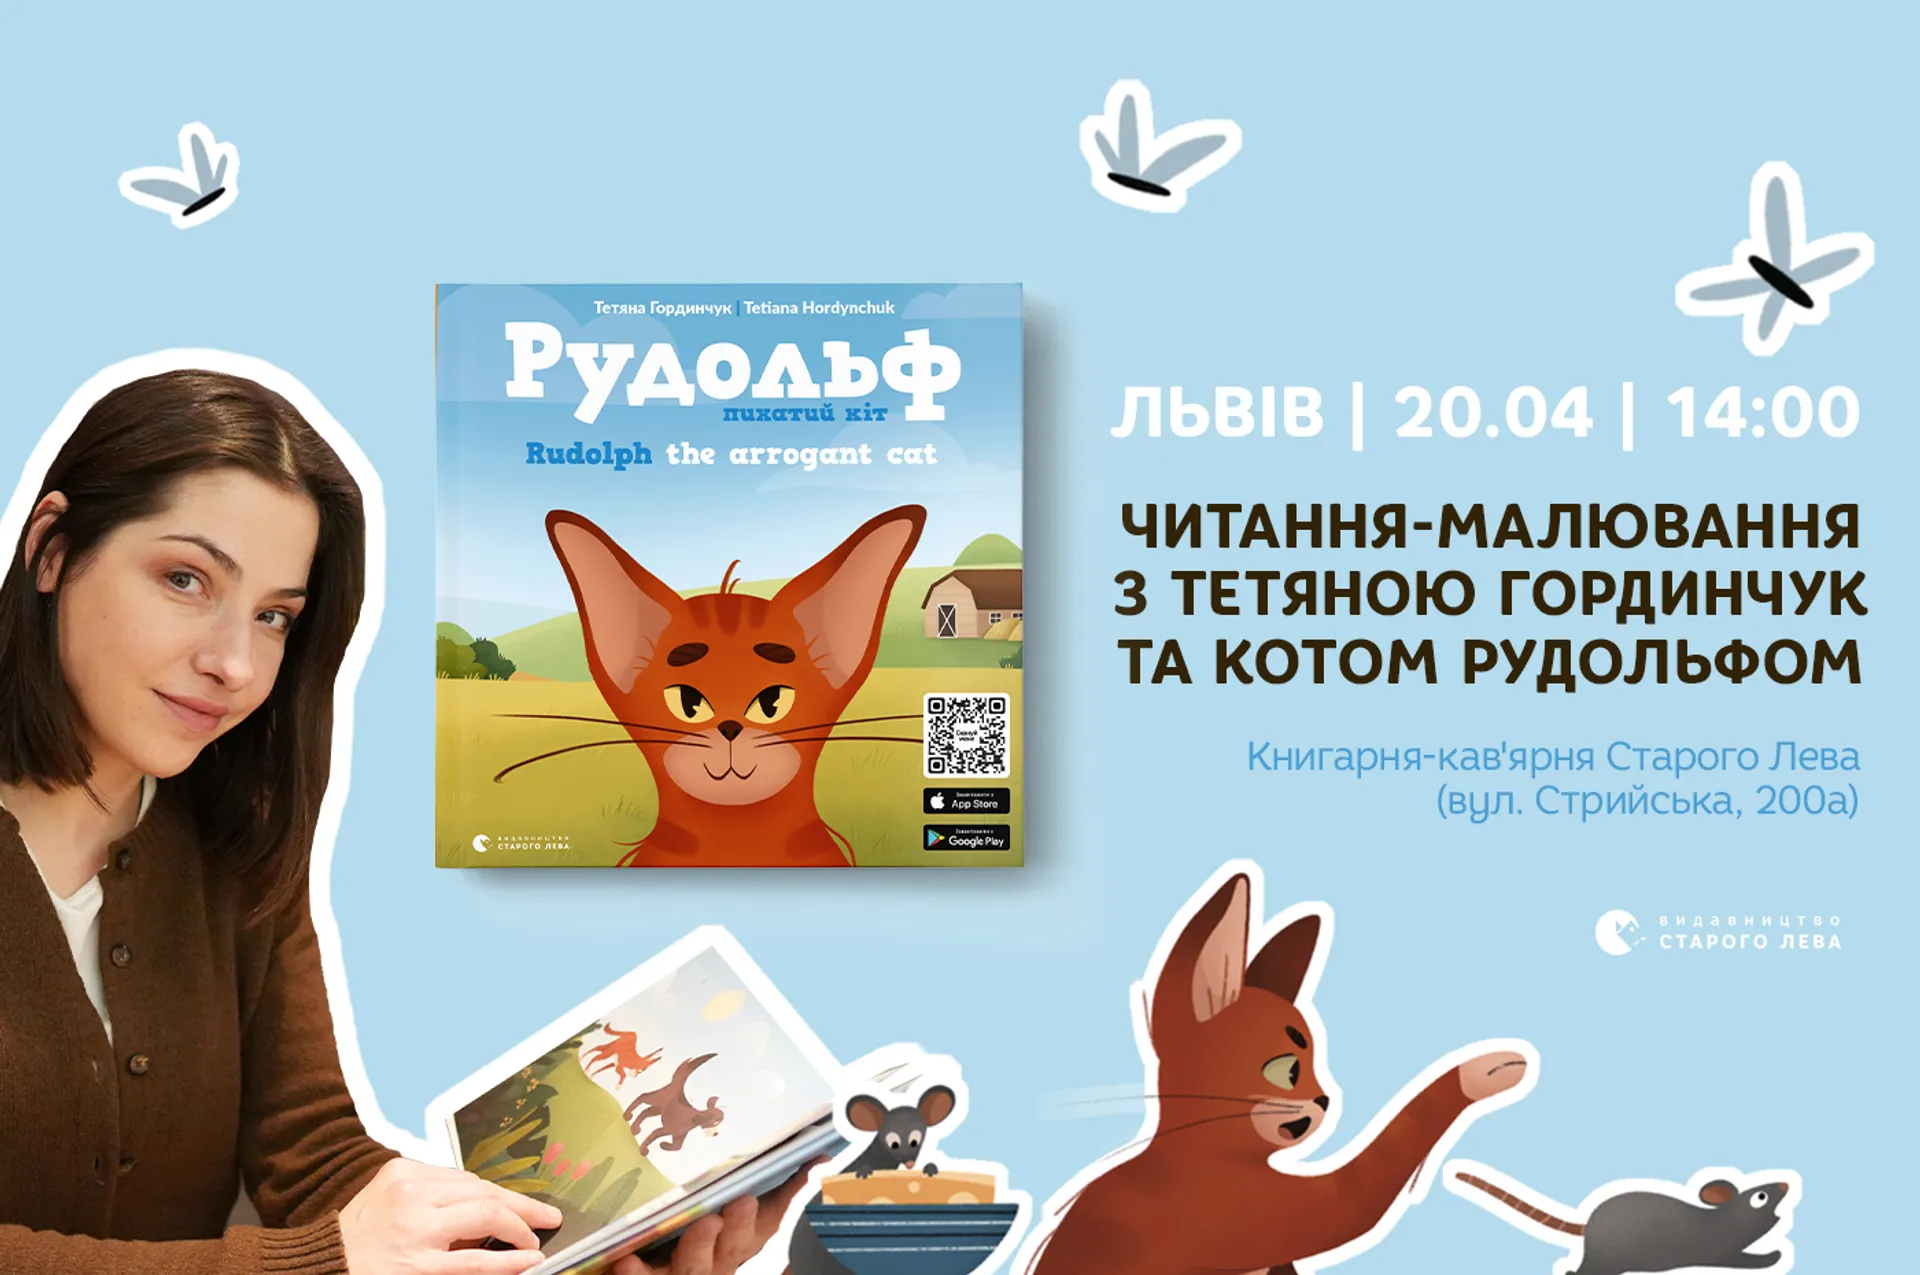 Читання-малювання з Тетяною Гординчук та котом Рудольфом